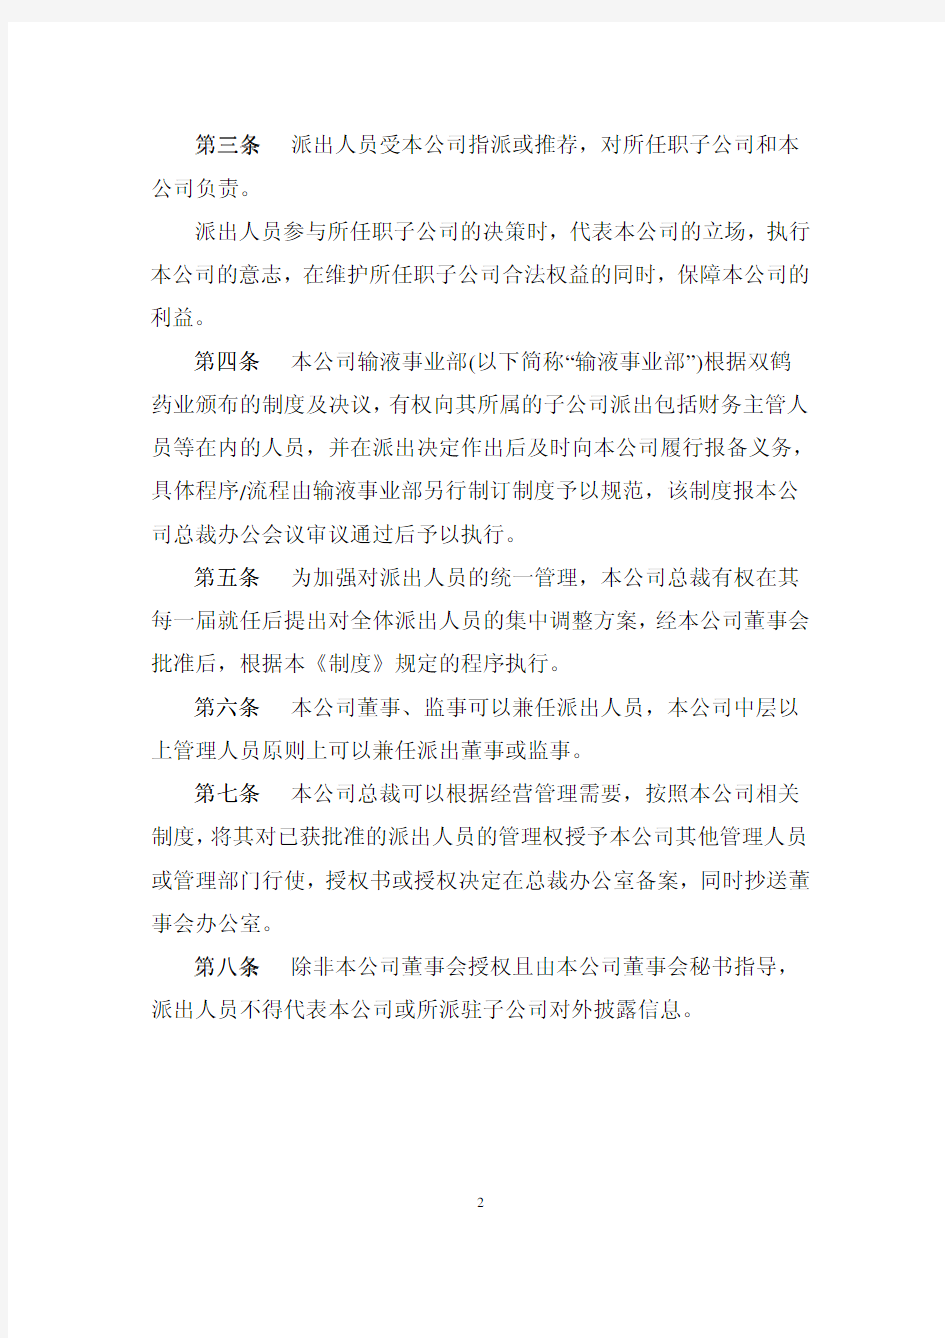 北京双鹤药业派出董监事及高级管理人员管理制度(试行)